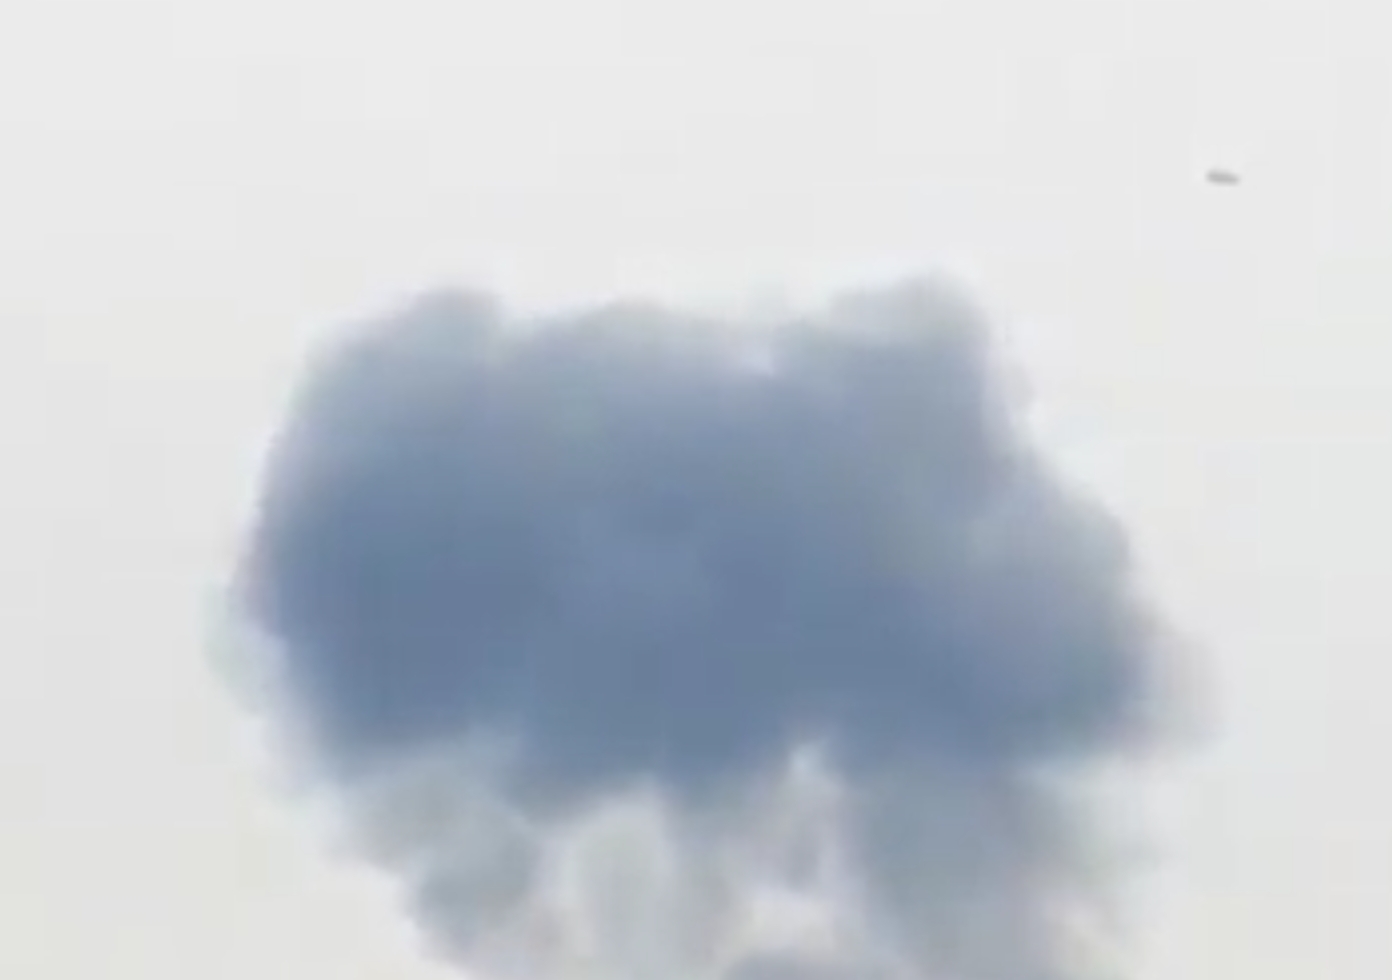 المعارضة تسقط طائرة روسية في إدلب وتعتقل الطيار (فيديو)